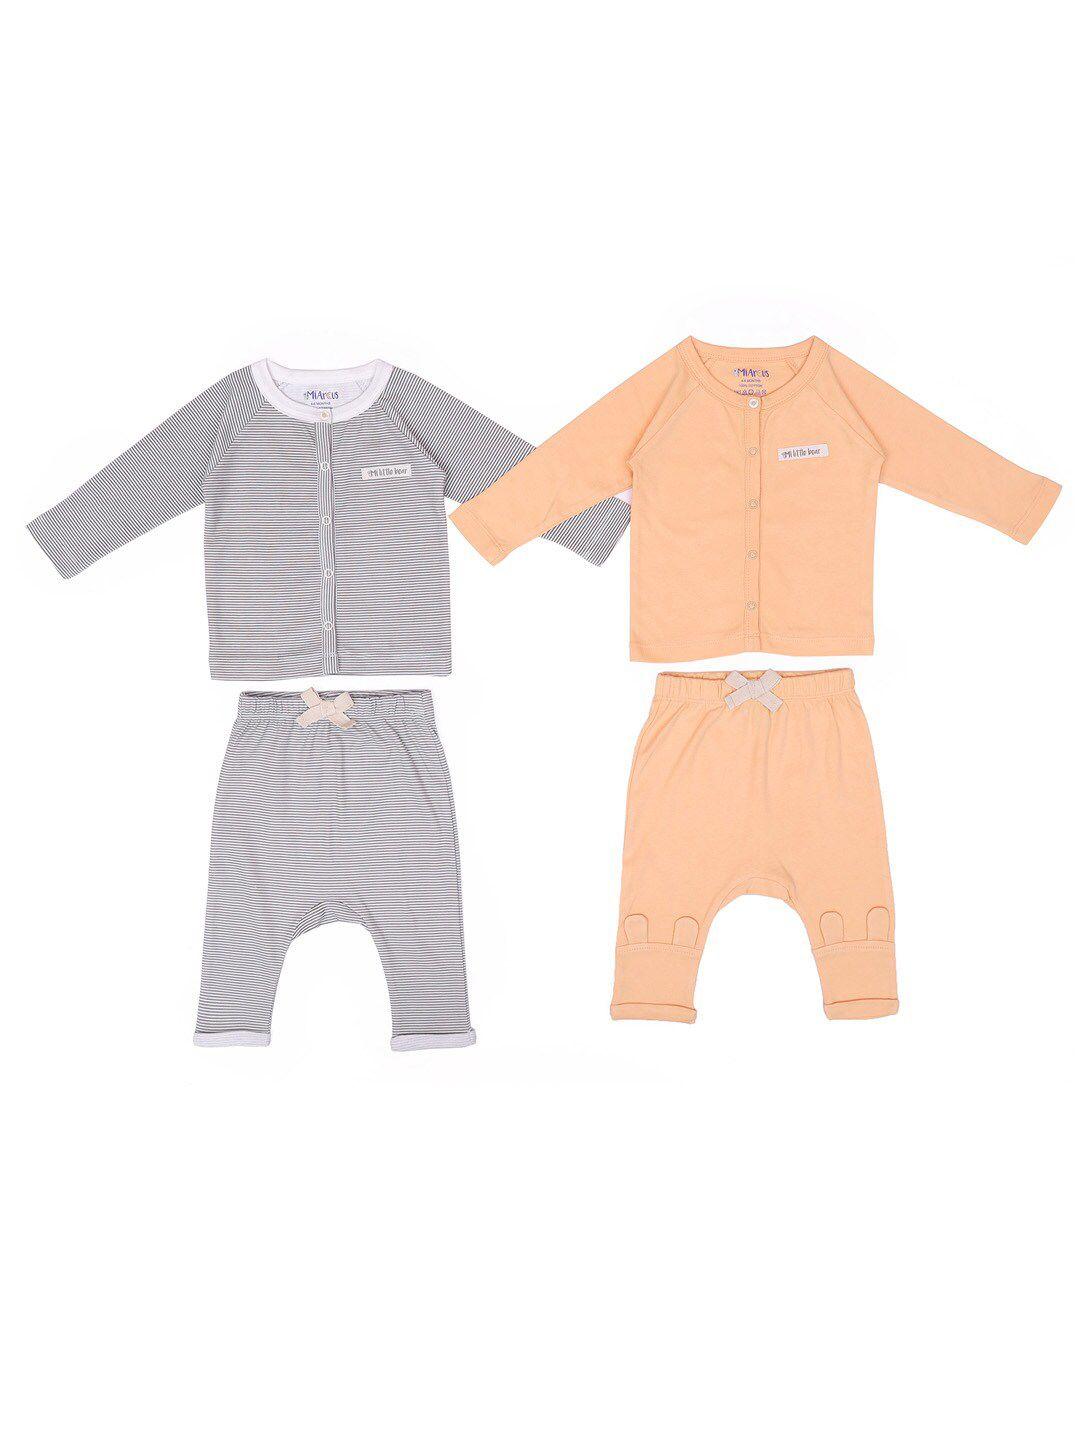 miarcus-unisex-kids-pack-of-2-grey-&-peach-coloured-printed-shirt-with-pyjamas